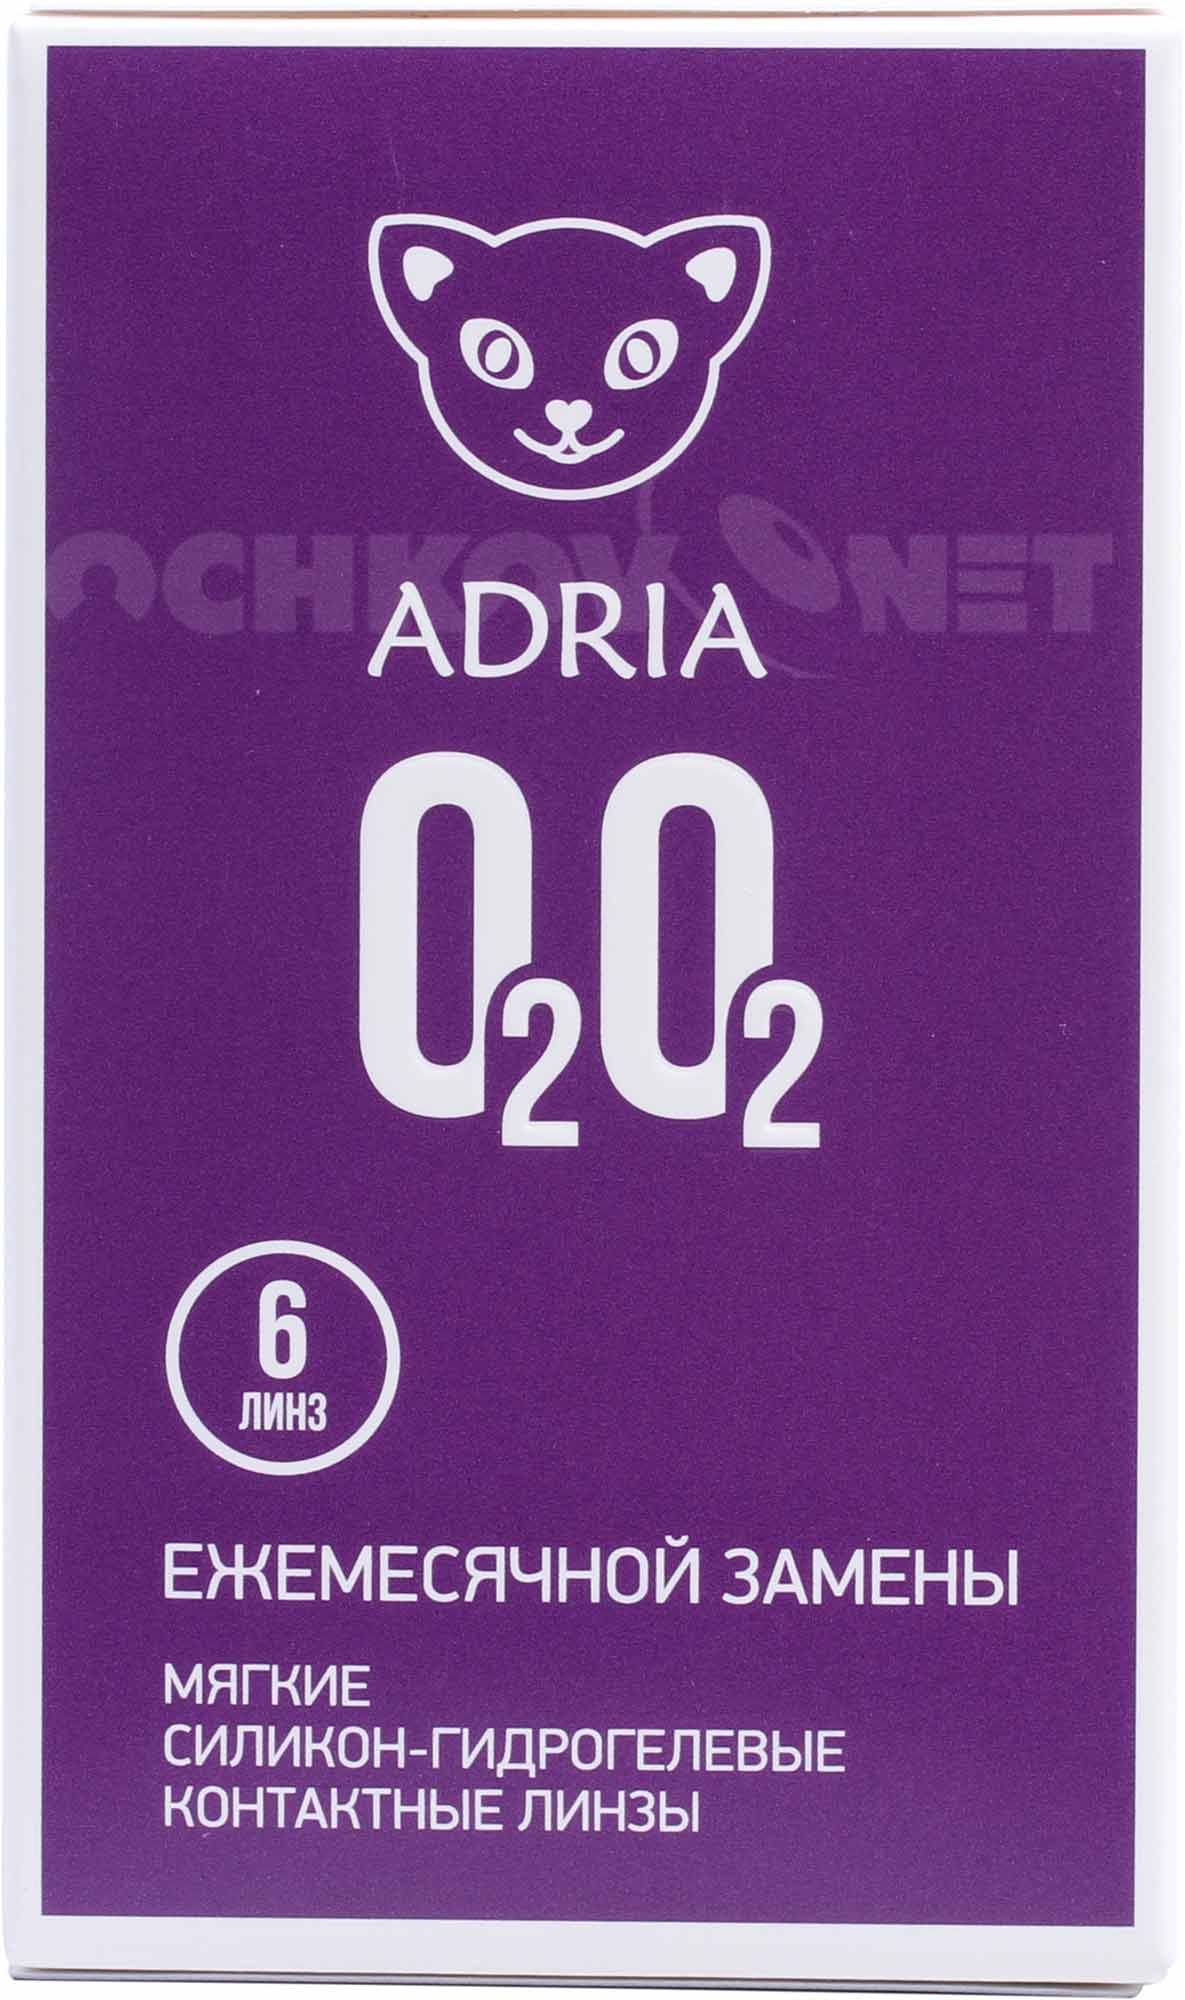 Контактные линзы Adria O2O2 (6 линз), Interojo  - купить со скидкой